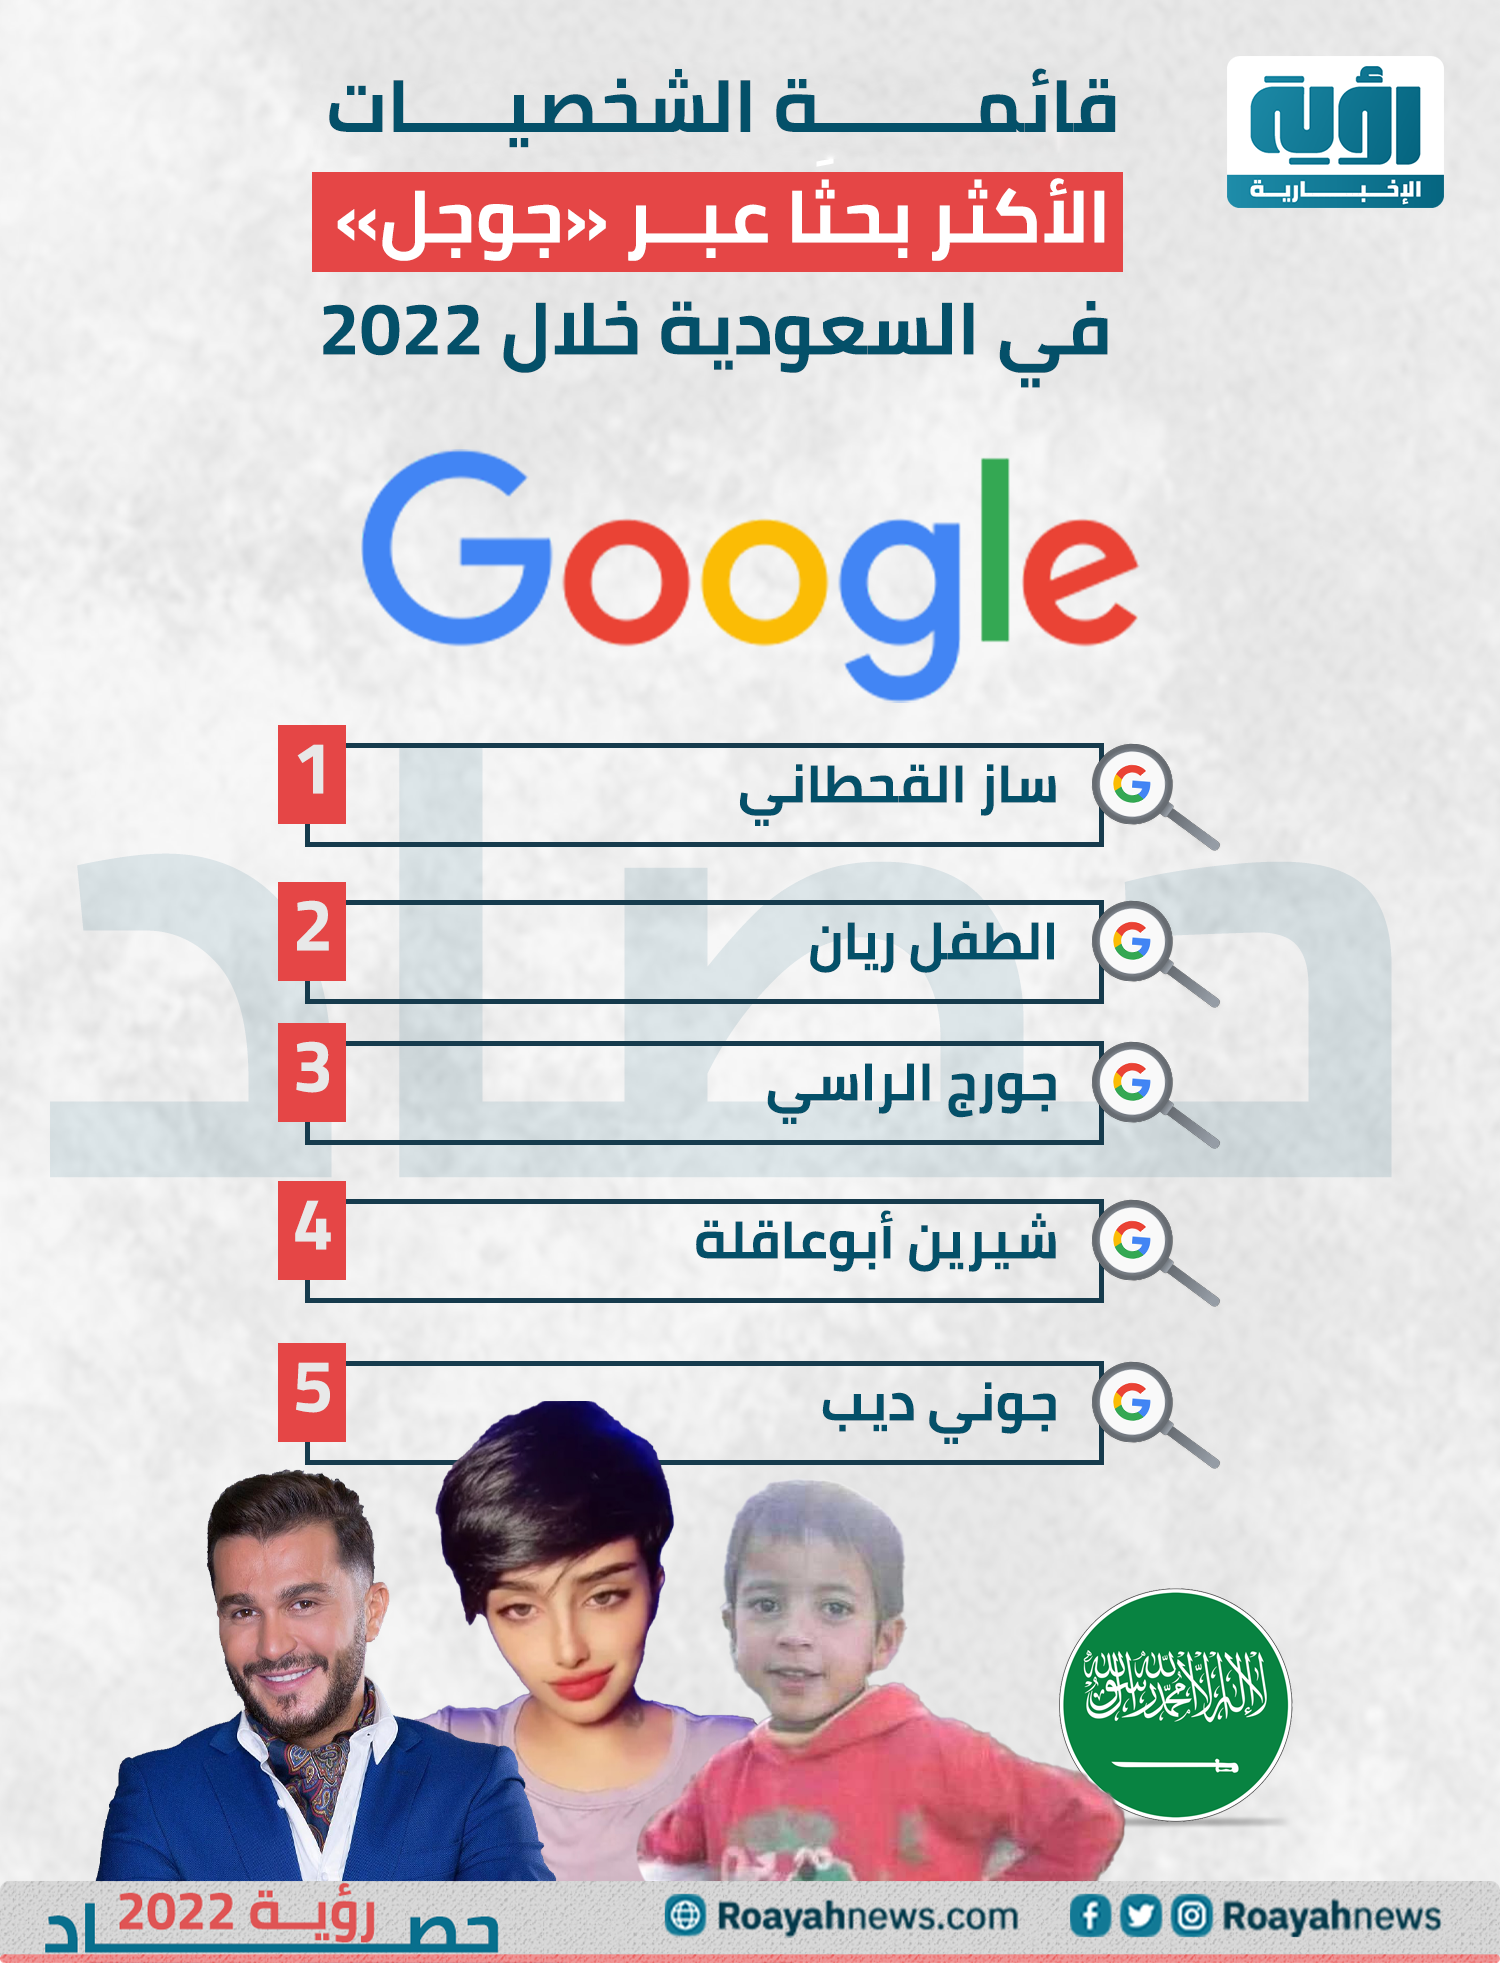 قائمة أكثر الشخصيات بحثًا عبر جوجل في السعودية خلال 2022 1